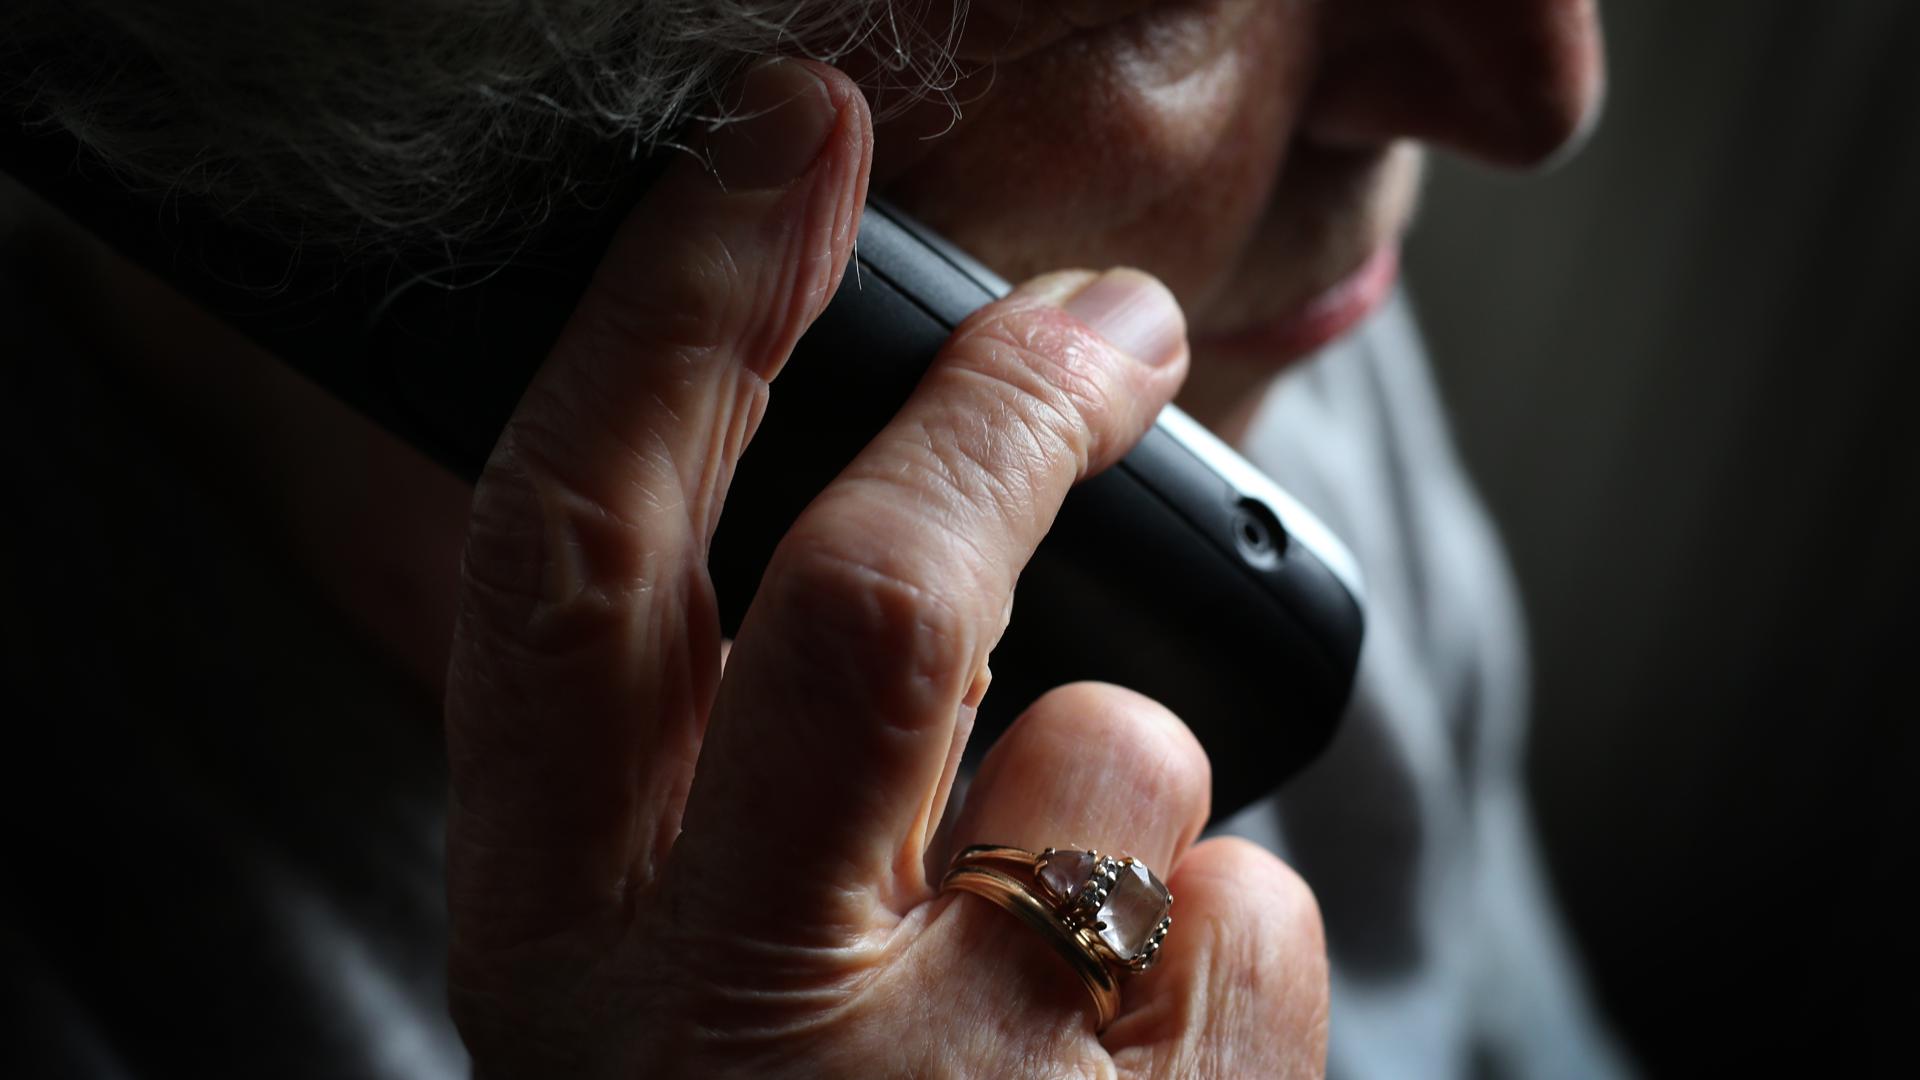 Eine ältere Frau telefoniert mit einem schnurlosen Festnetztelefon. In Hessen werden viele Seniorinnen und Senioren durch den sogenannten Enkeltrick oder Schockanruf um ihr Erspartes gebracht. (zu dpa: "Die Masche mit der Angst: Telefonbetrüger setzen auf Panik bei Opfern") +++ dpa-Bildfunk +++